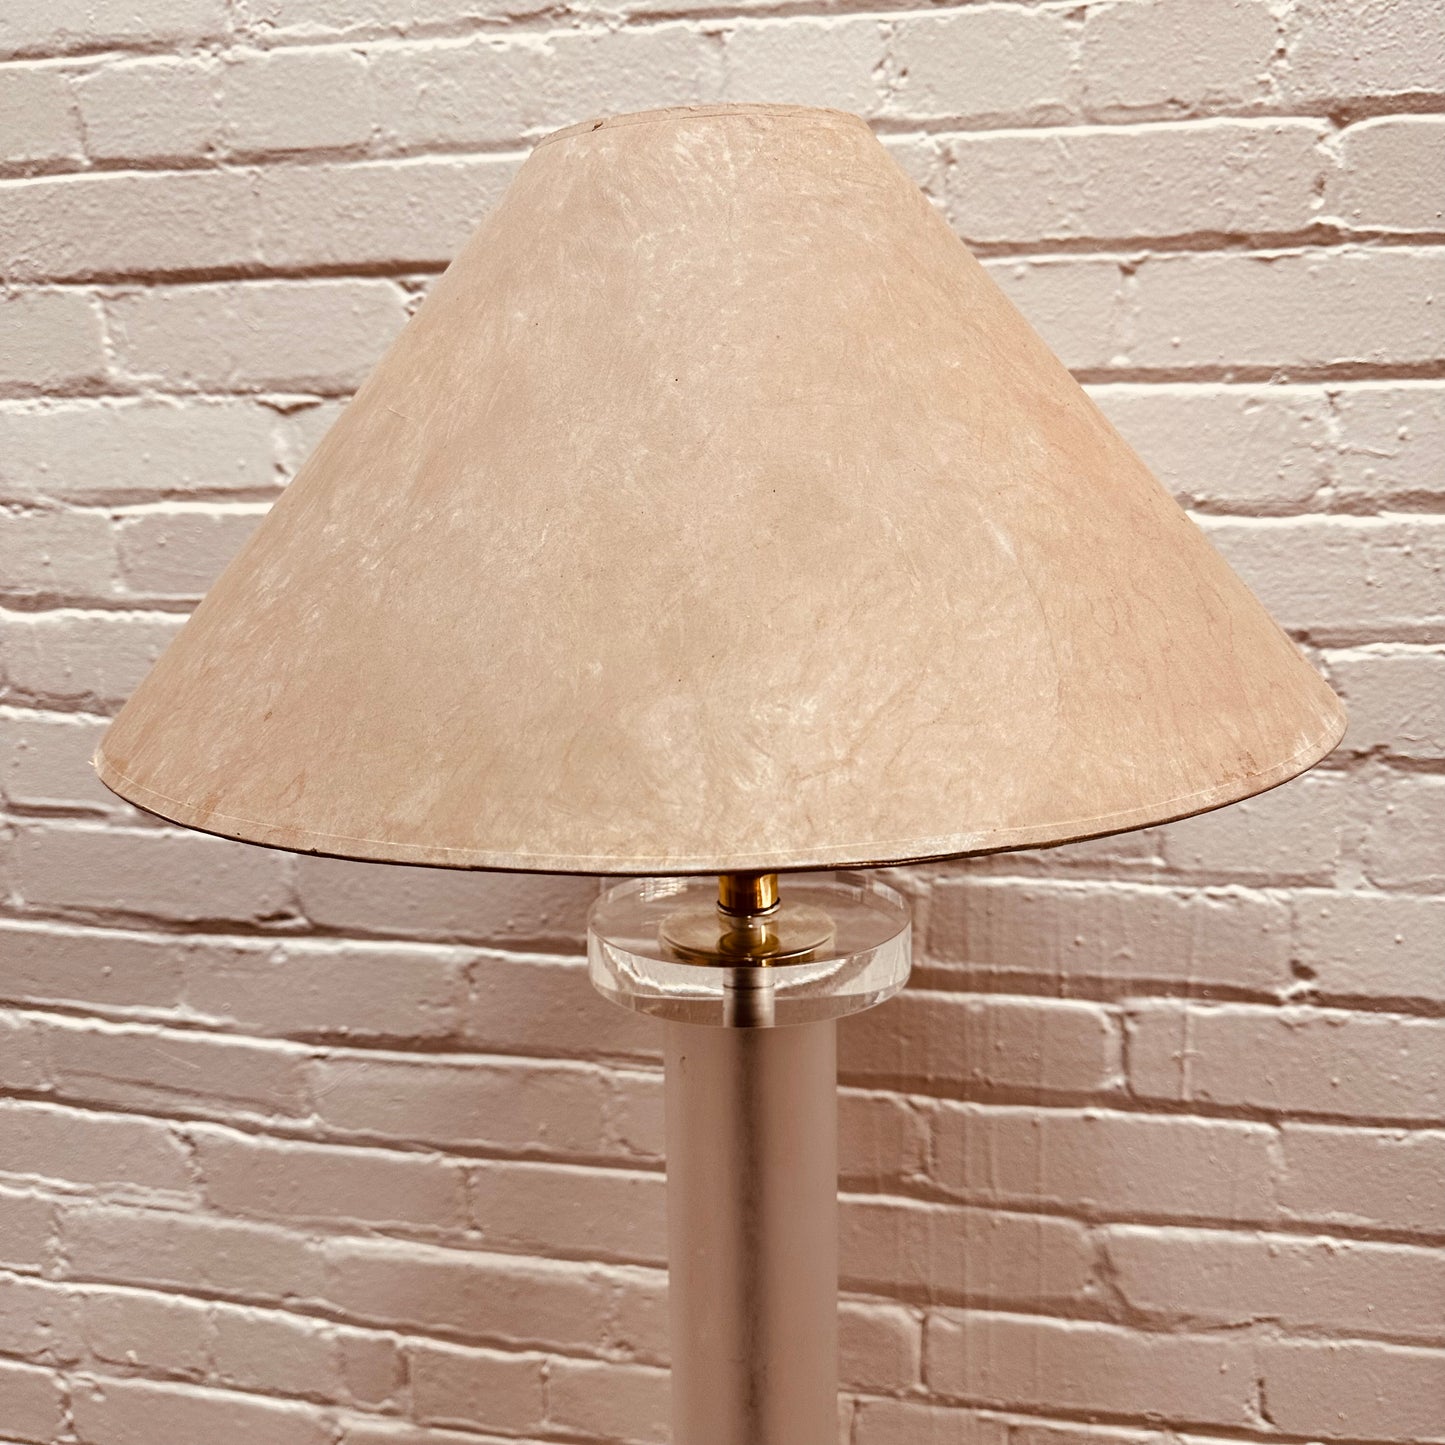 LUCITE FLOOR LAMP IN KARL SPRINGER STYLE